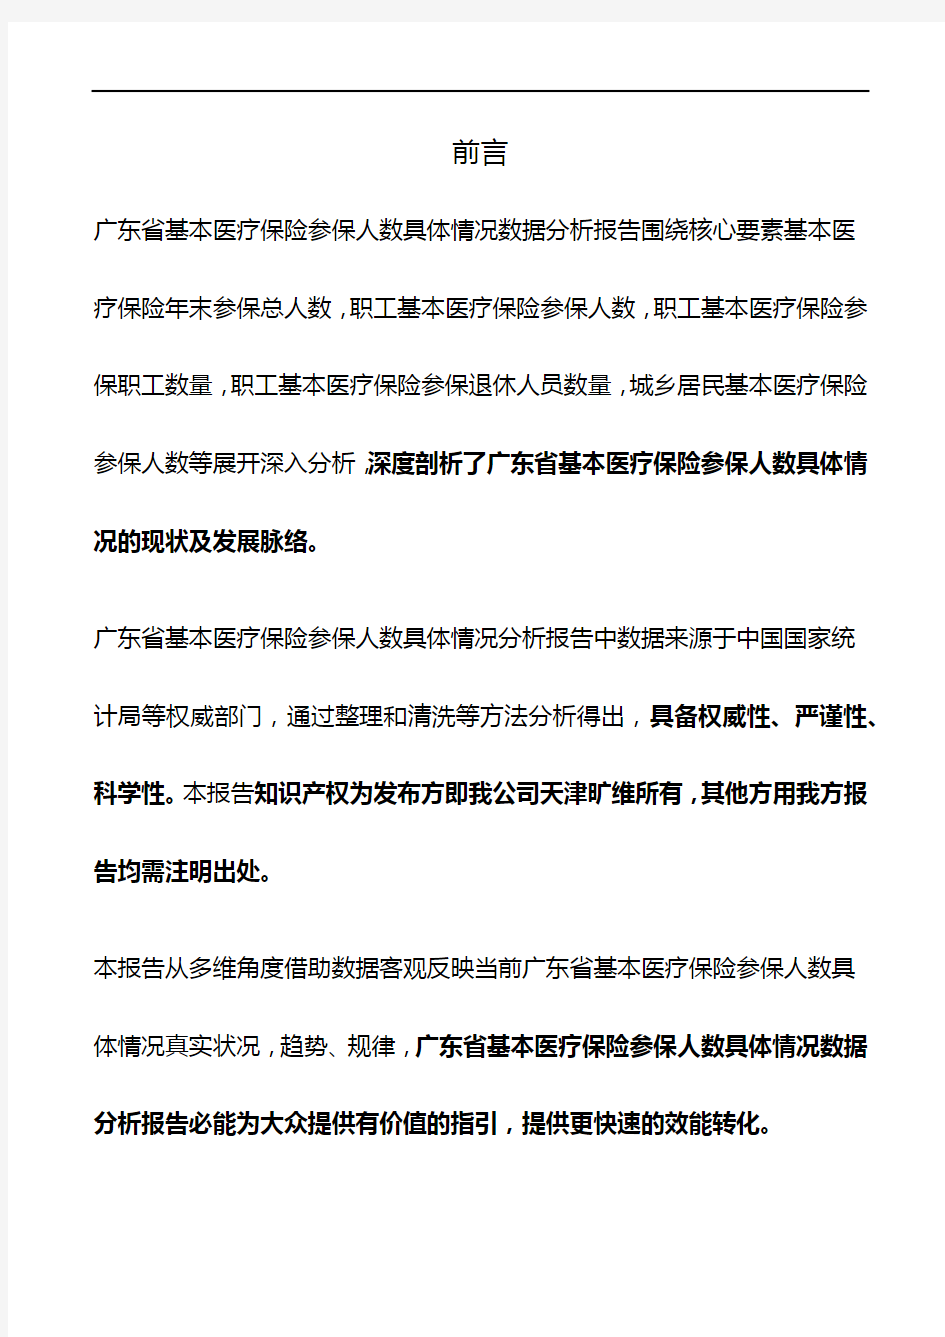 广东省基本医疗保险参保人数具体情况3年数据分析报告2019版